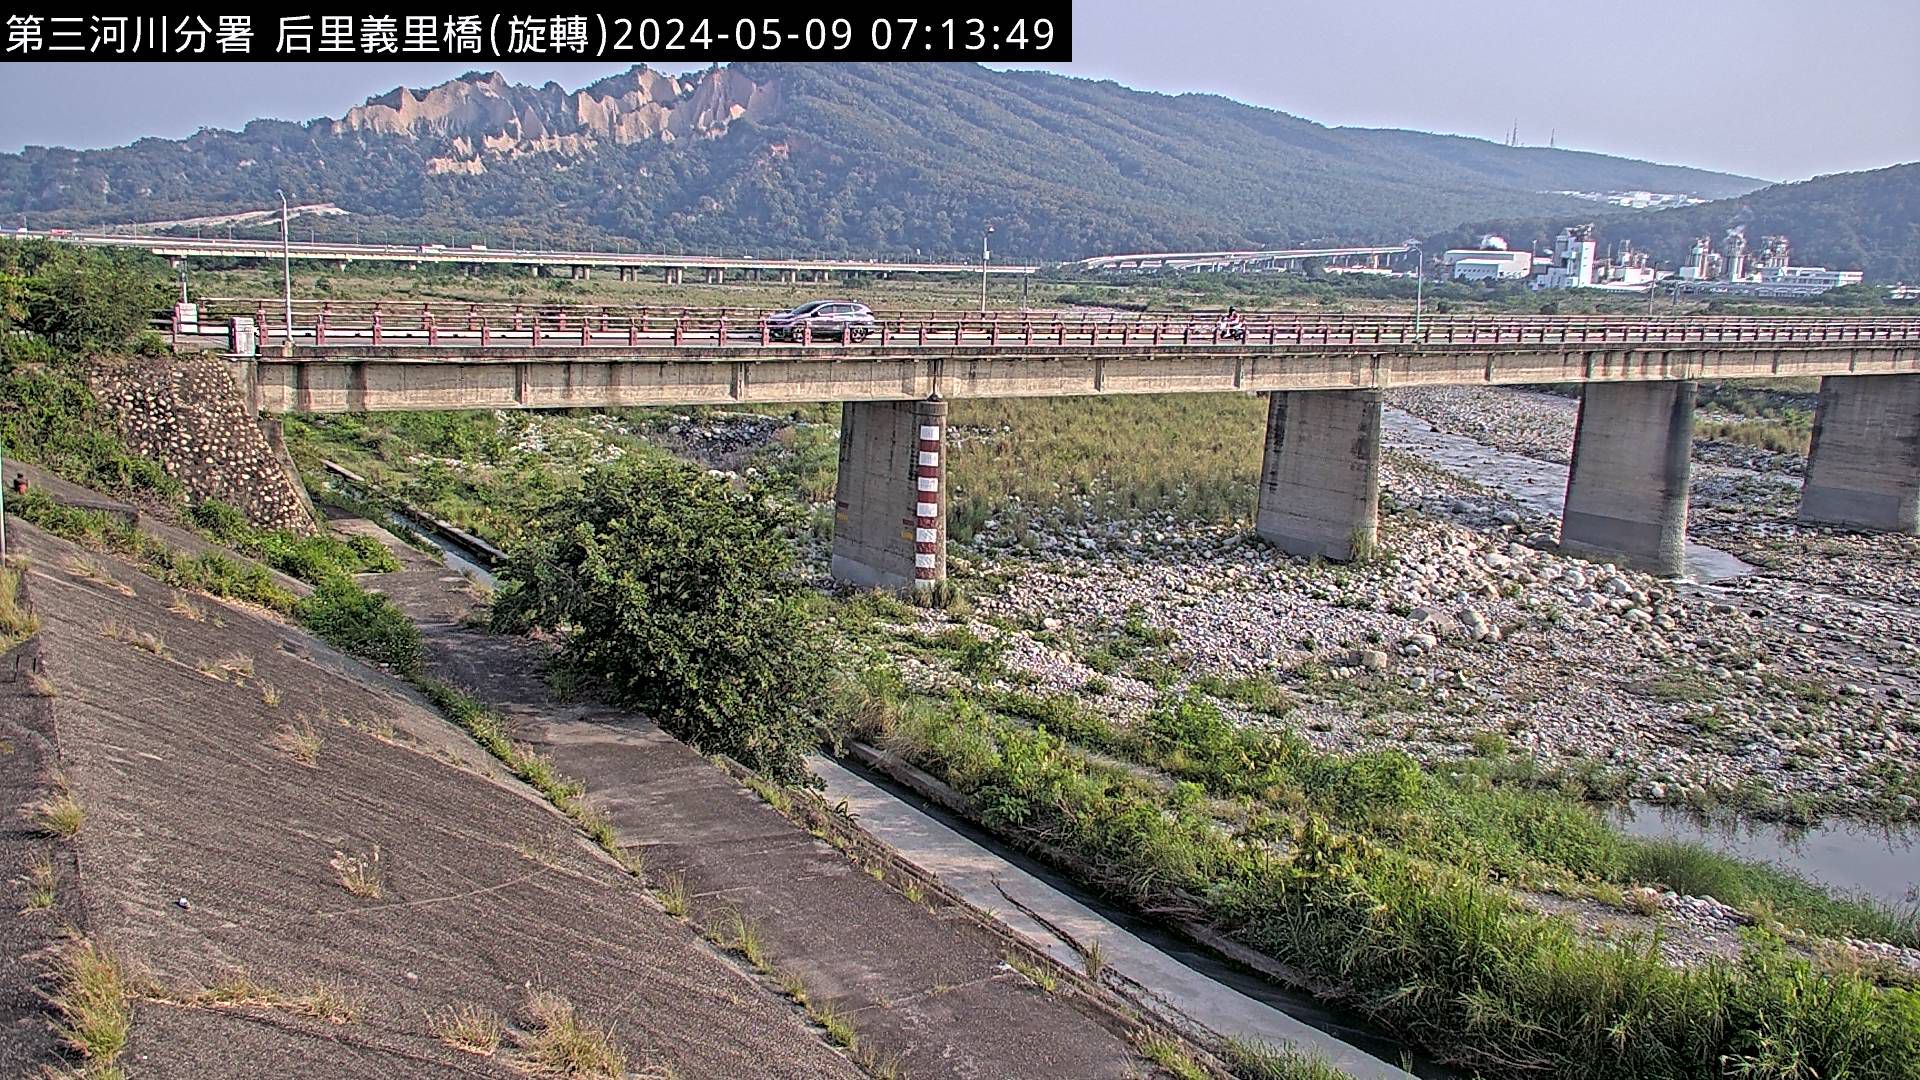 水利署水資源  防災中心 義里橋 距離2.5公里 氣溫25.9度